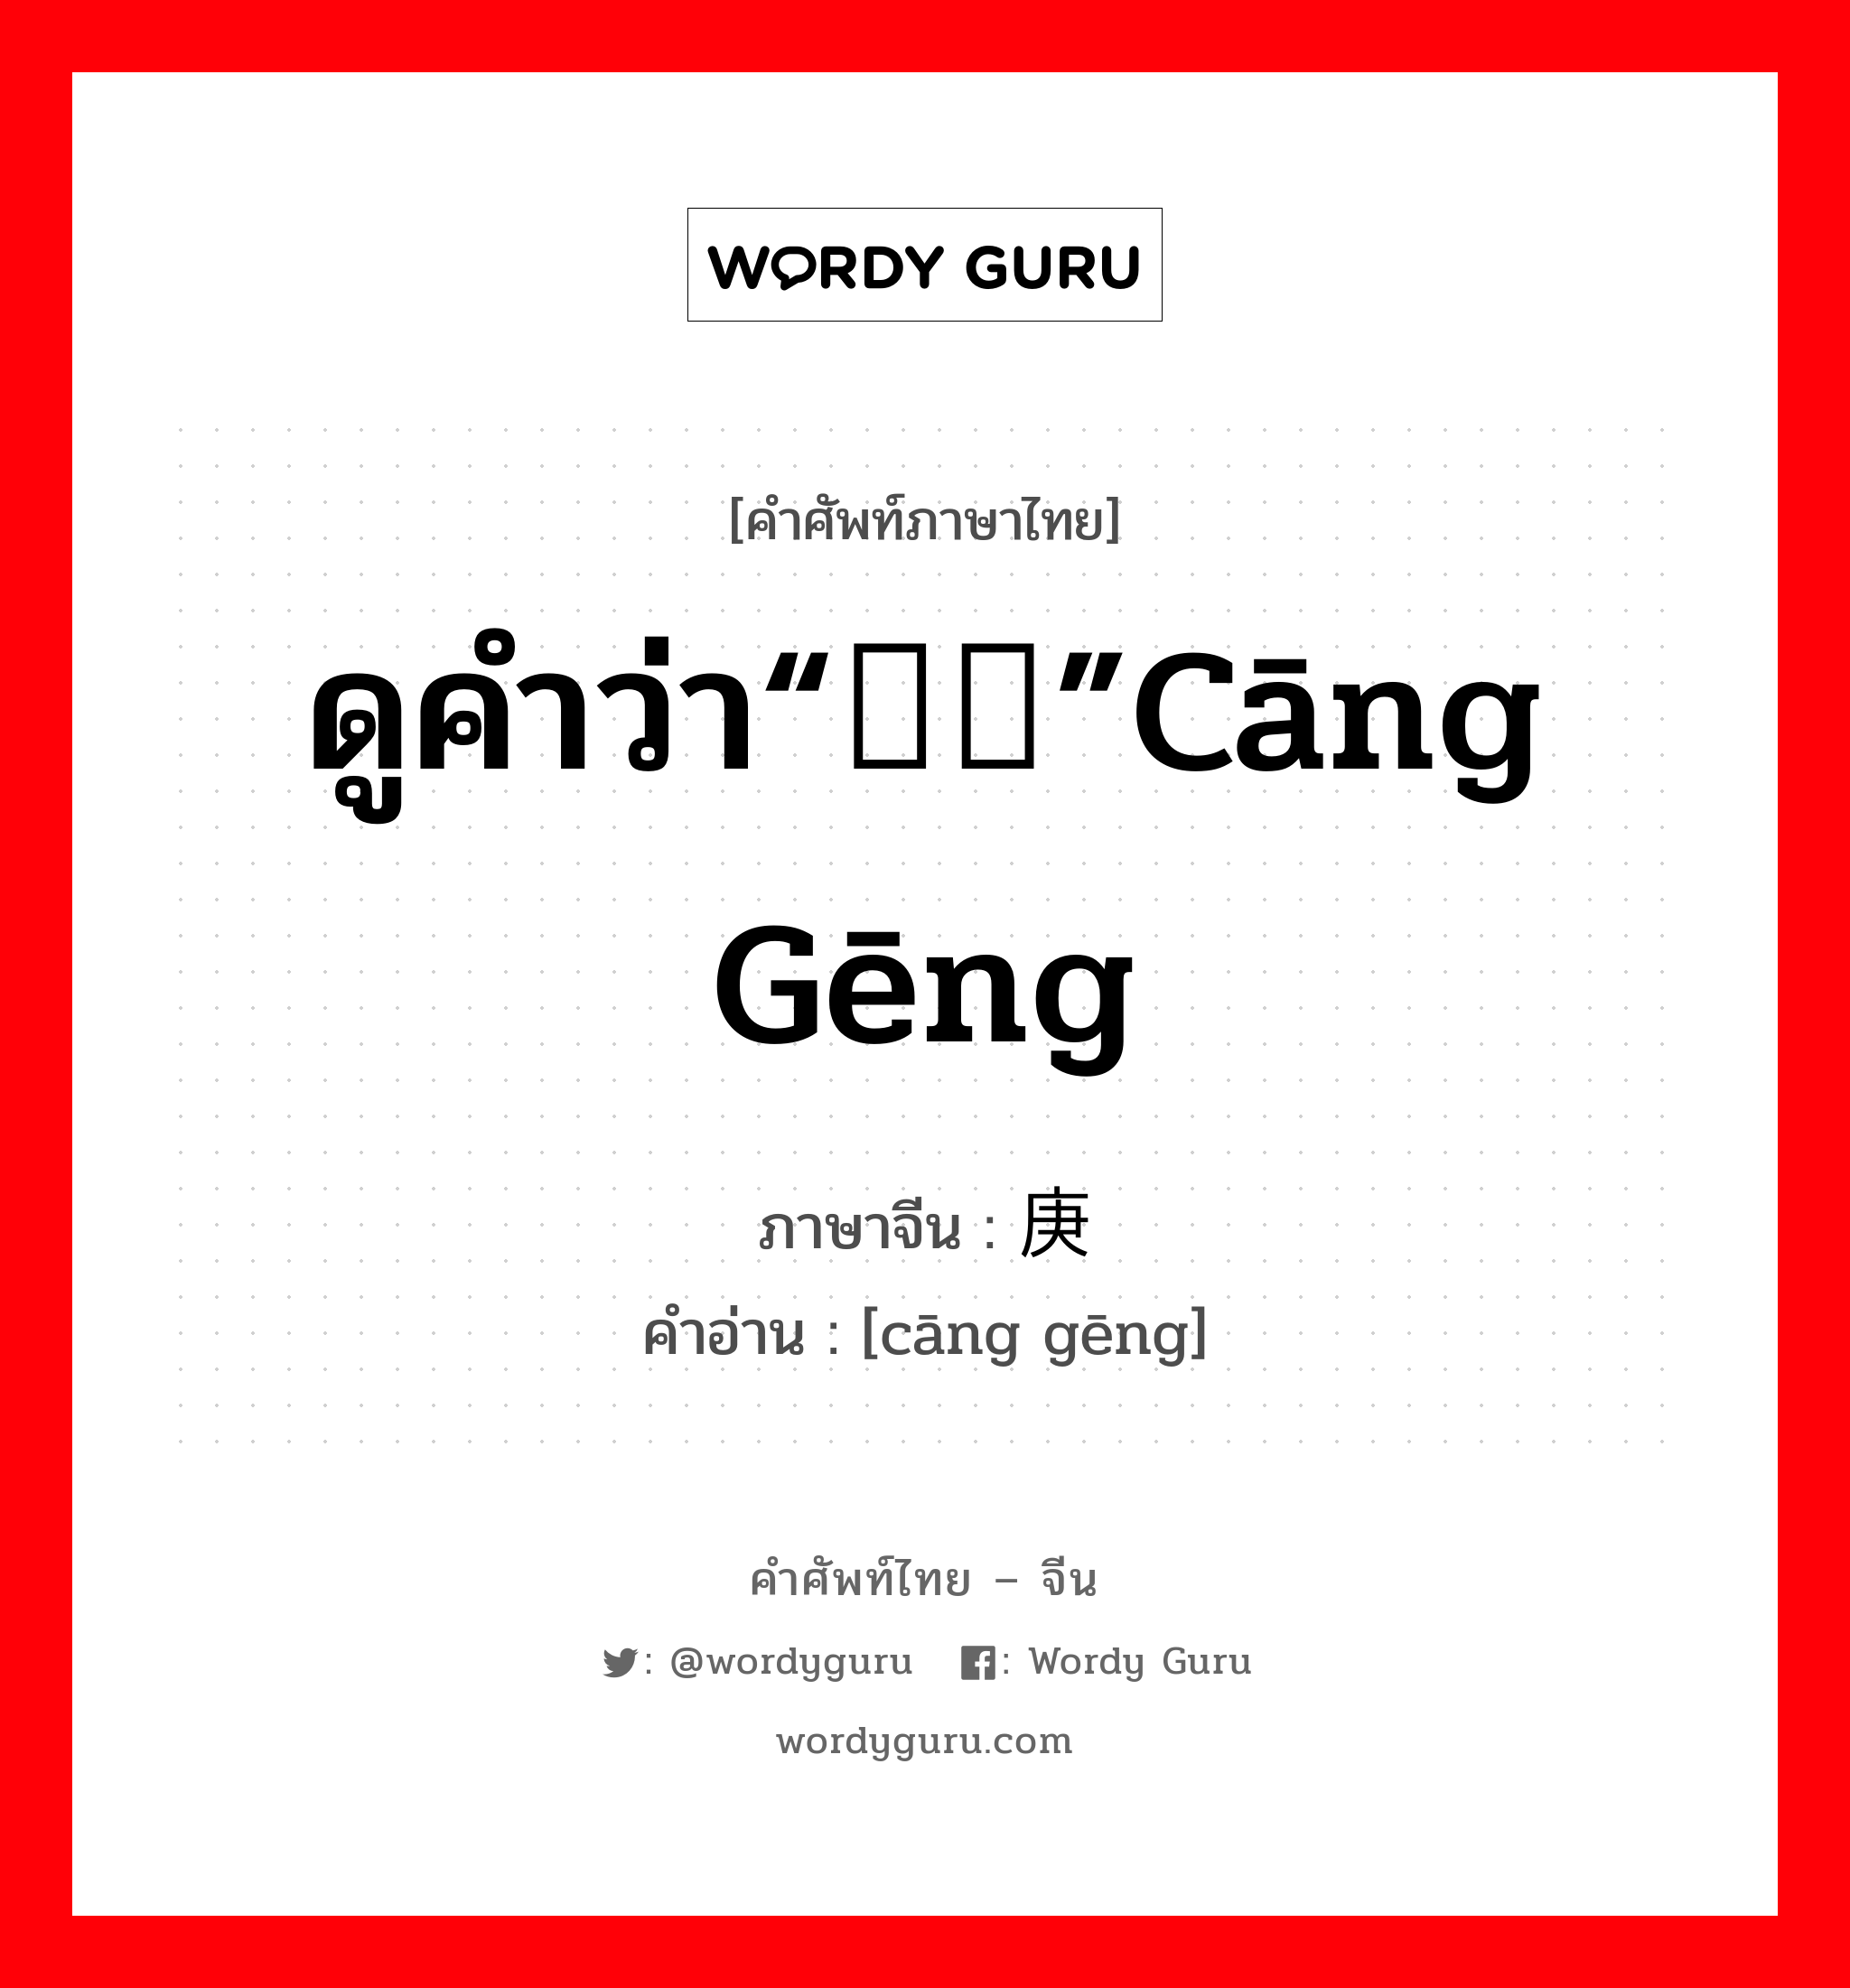 ดูคำว่า“鸧鹒”cāng gēng ภาษาจีนคืออะไร, คำศัพท์ภาษาไทย - จีน ดูคำว่า“鸧鹒”cāng gēng ภาษาจีน 仓庚 คำอ่าน [cāng gēng]